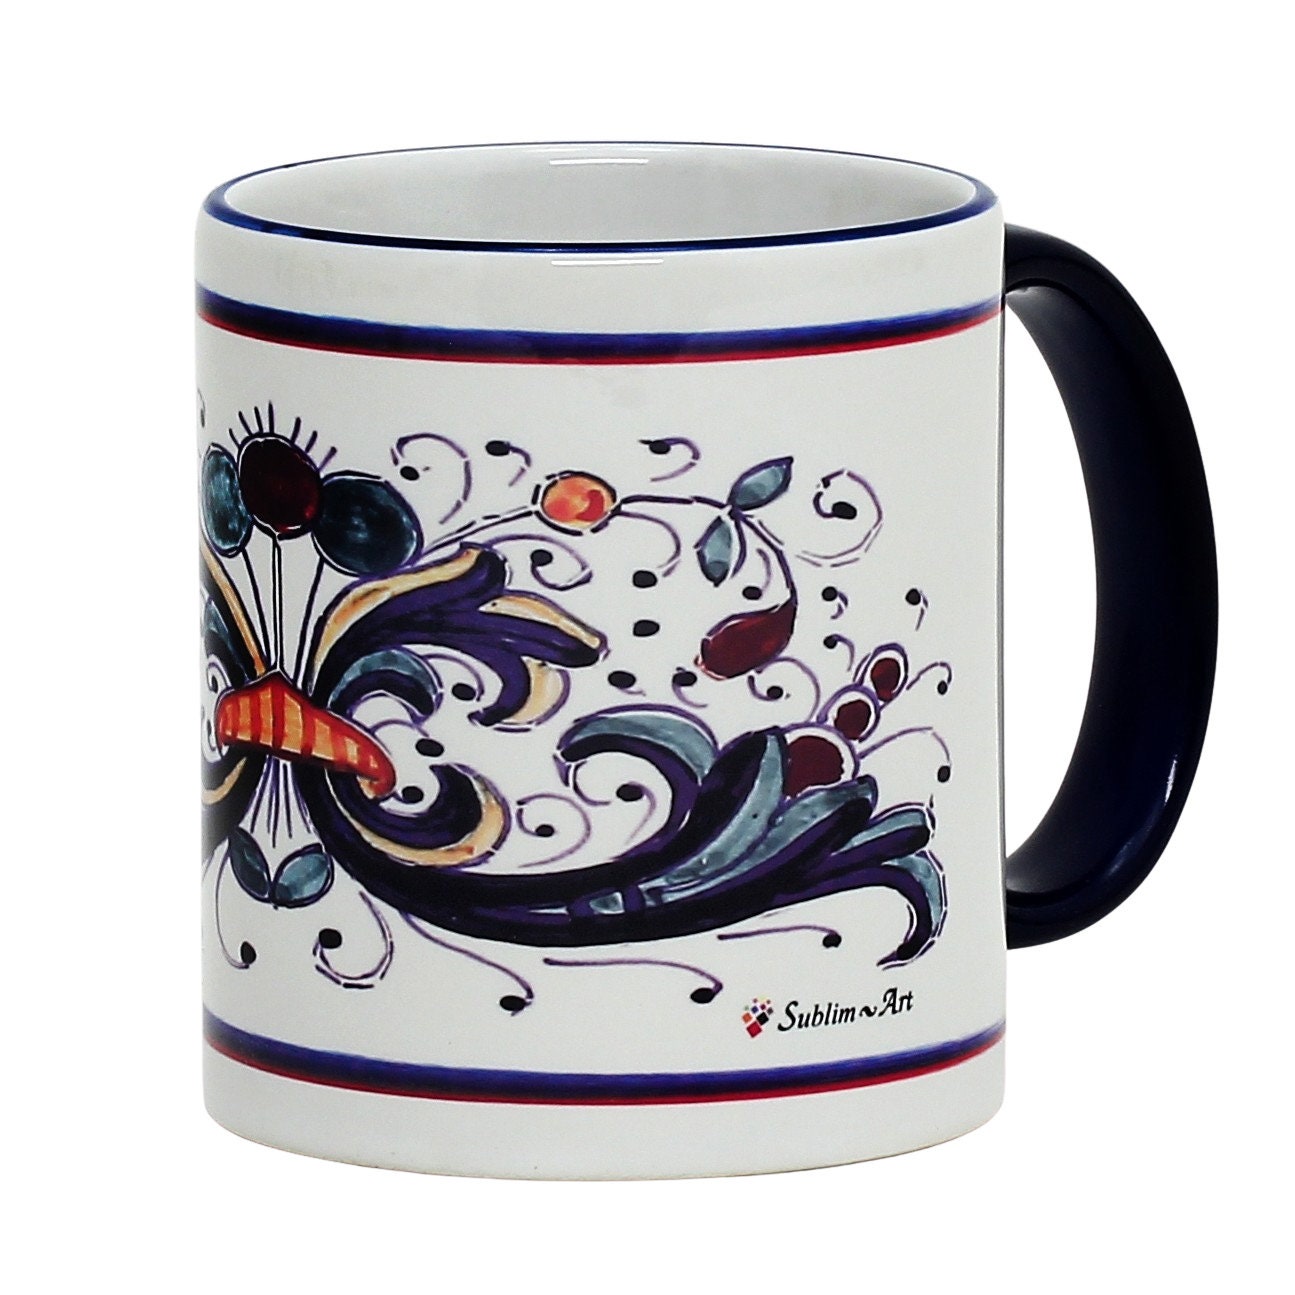 SUBLIMART: Printed Deruta style Mug with Blue Rim - Artistica.com